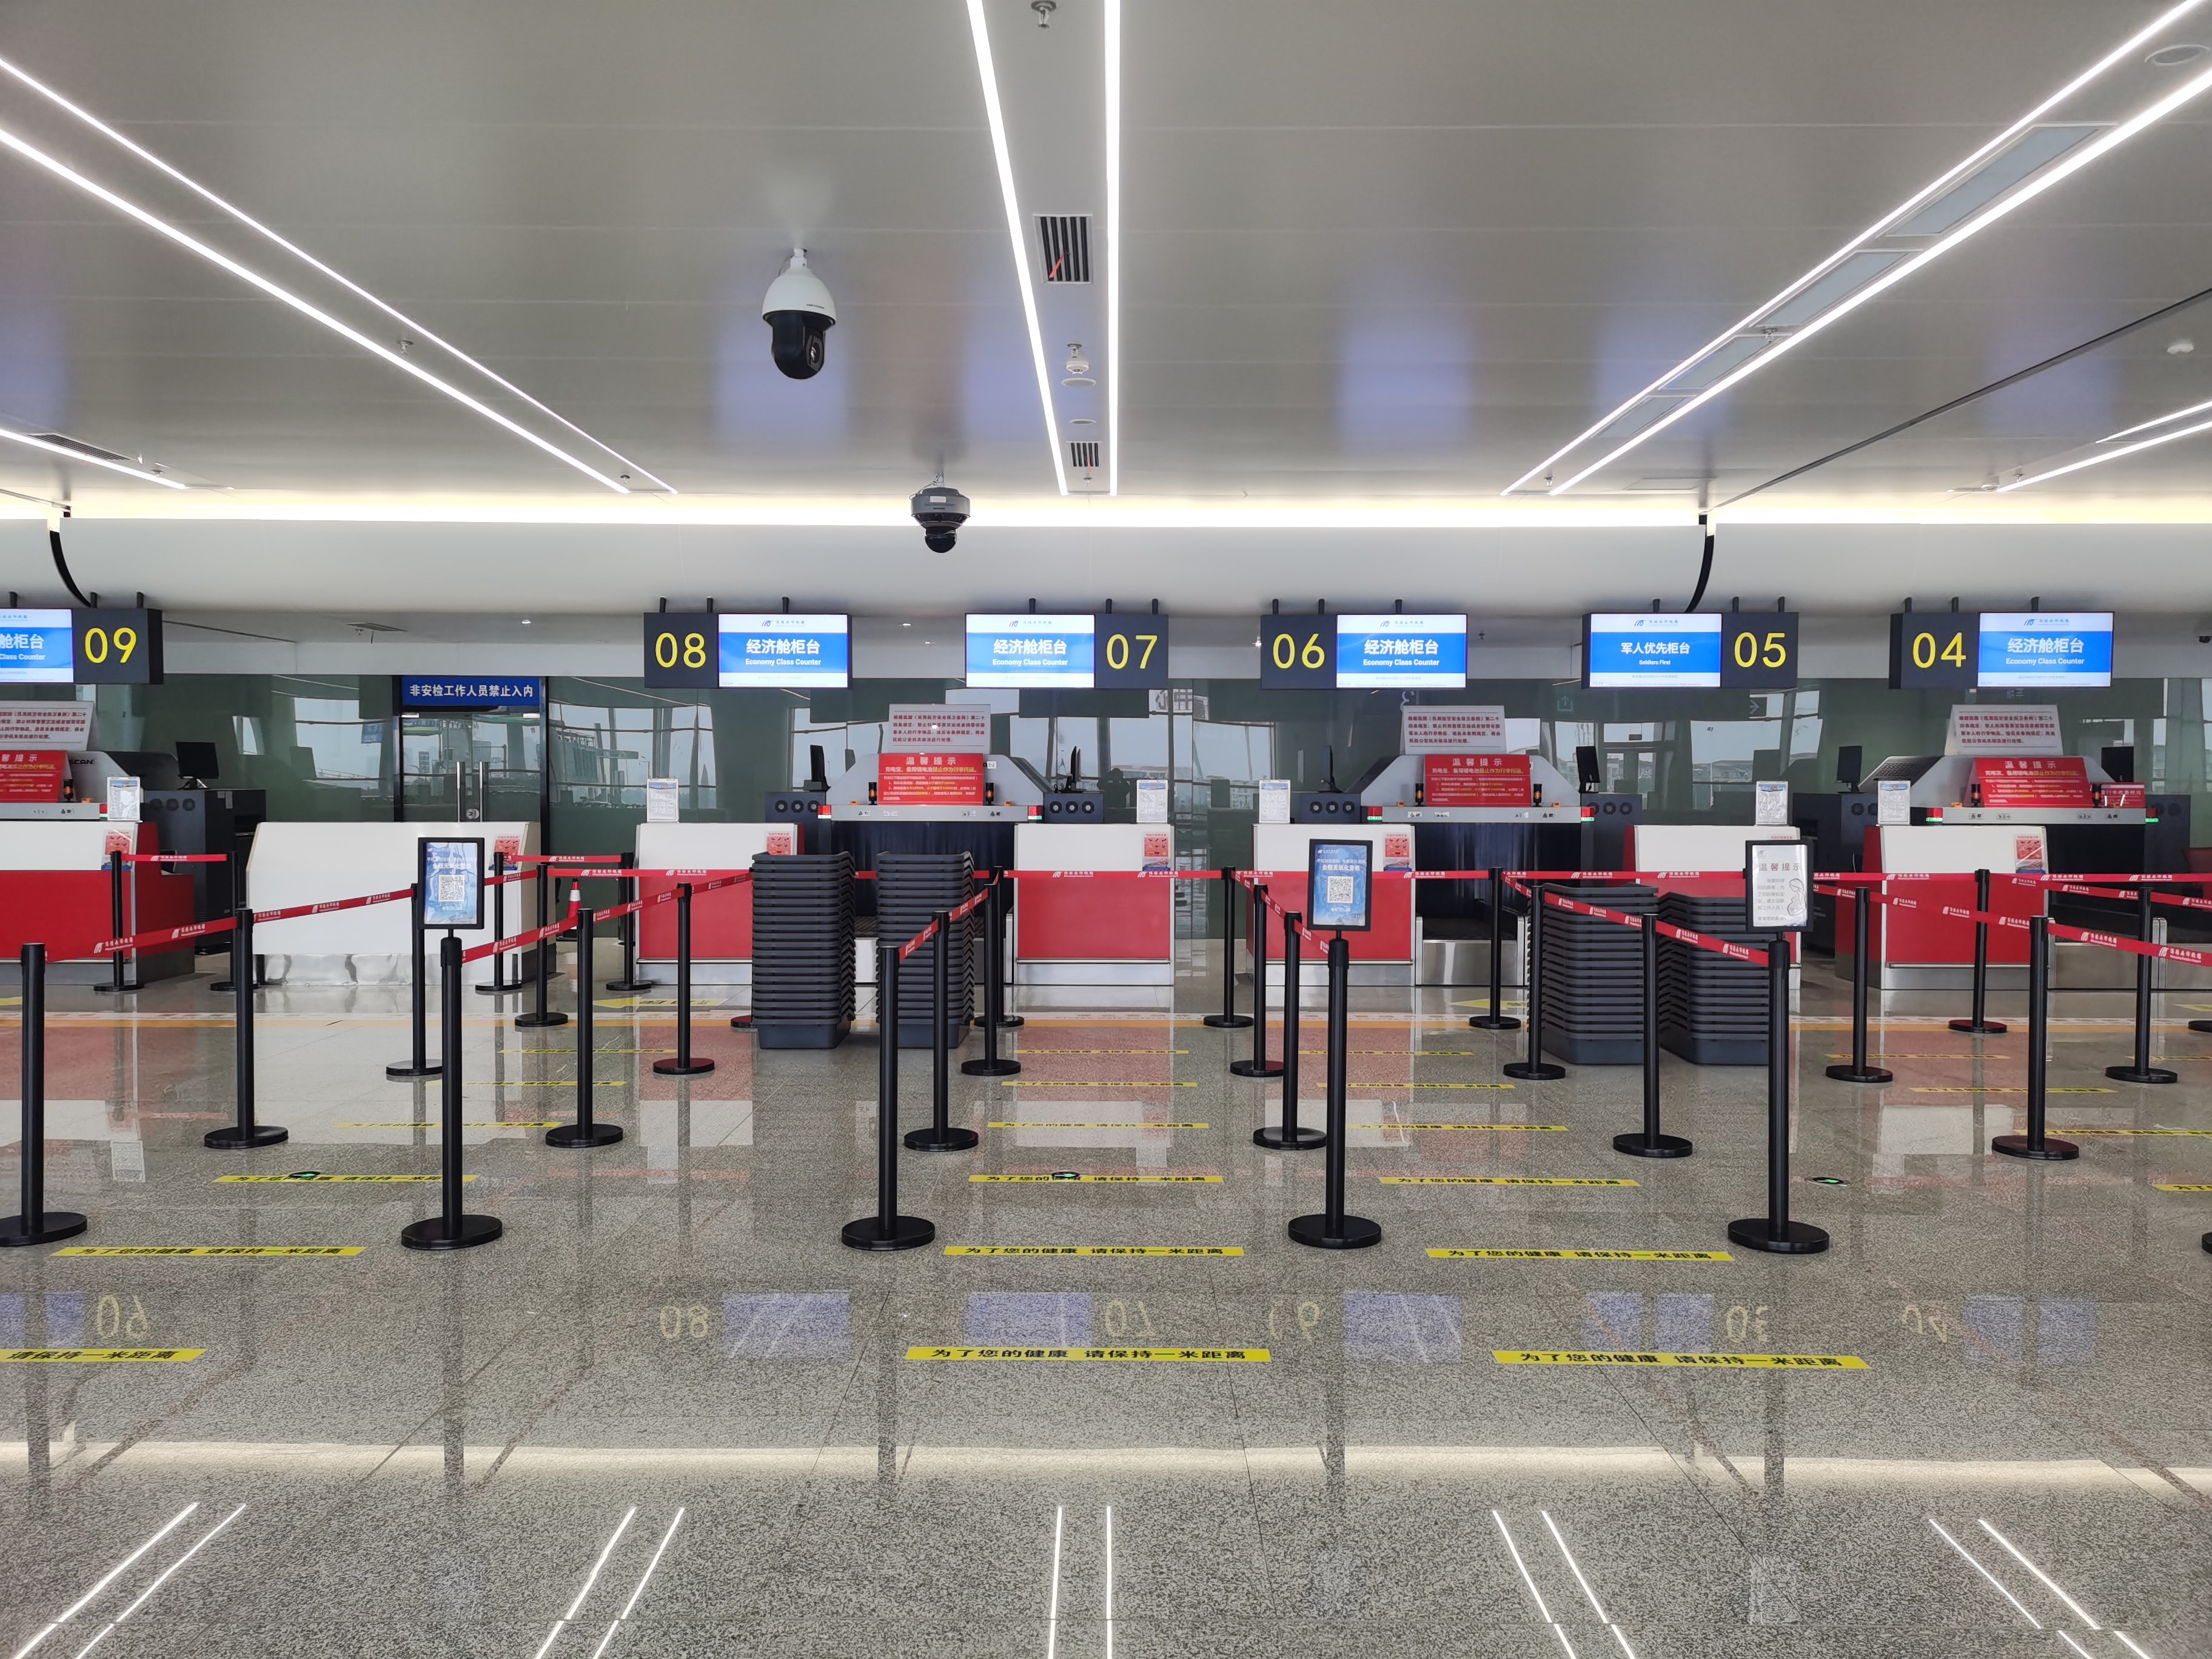 四川第三大机场再升级绵阳南郊机场新航站楼投运